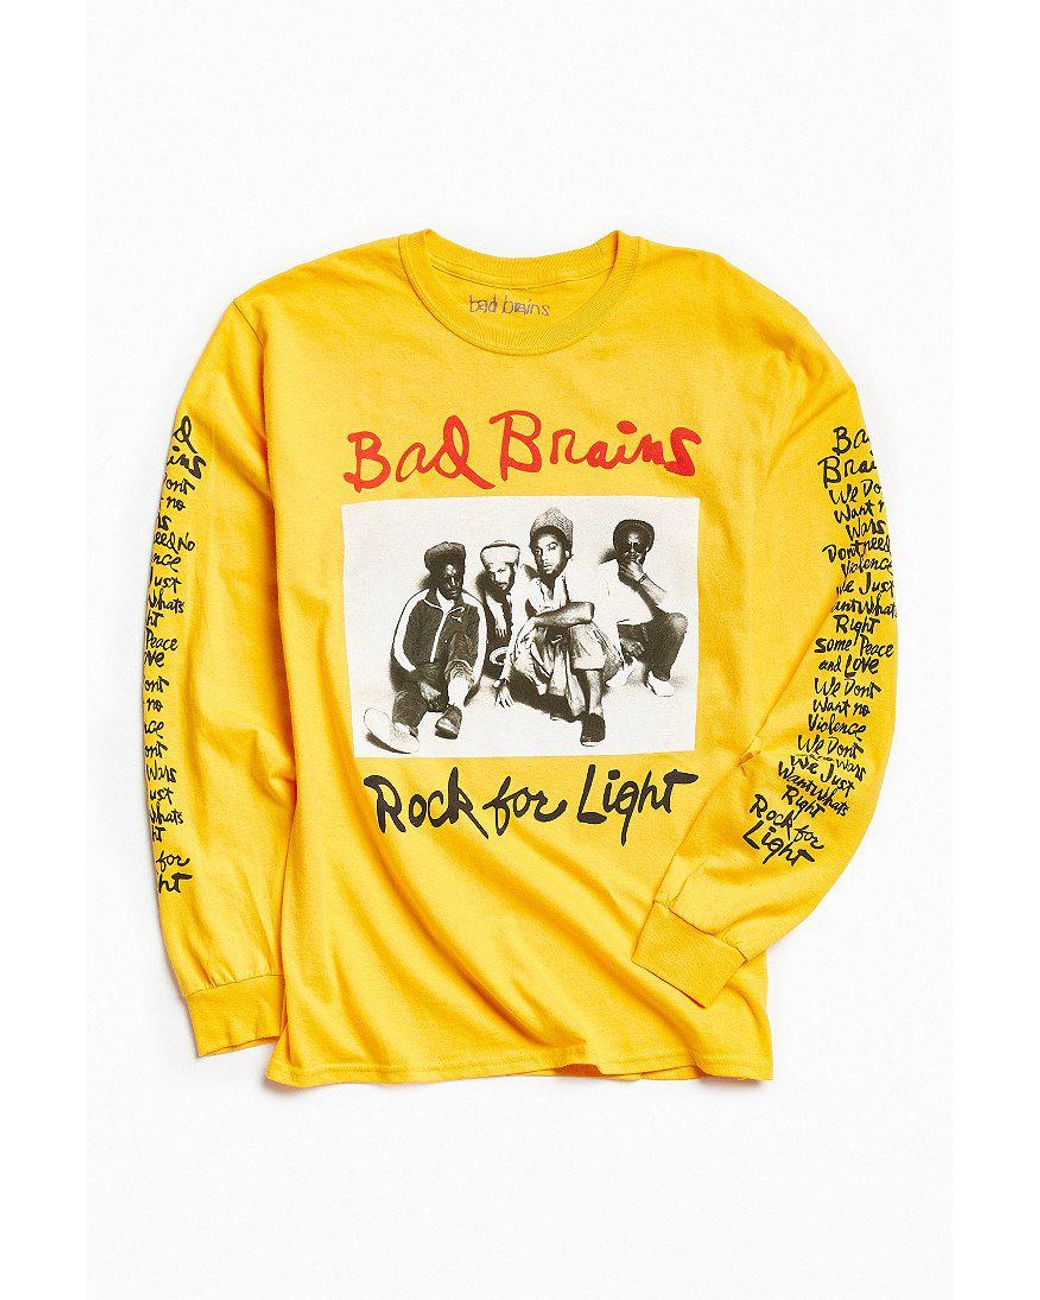 Bad Brains Light' Men's T-Shirt